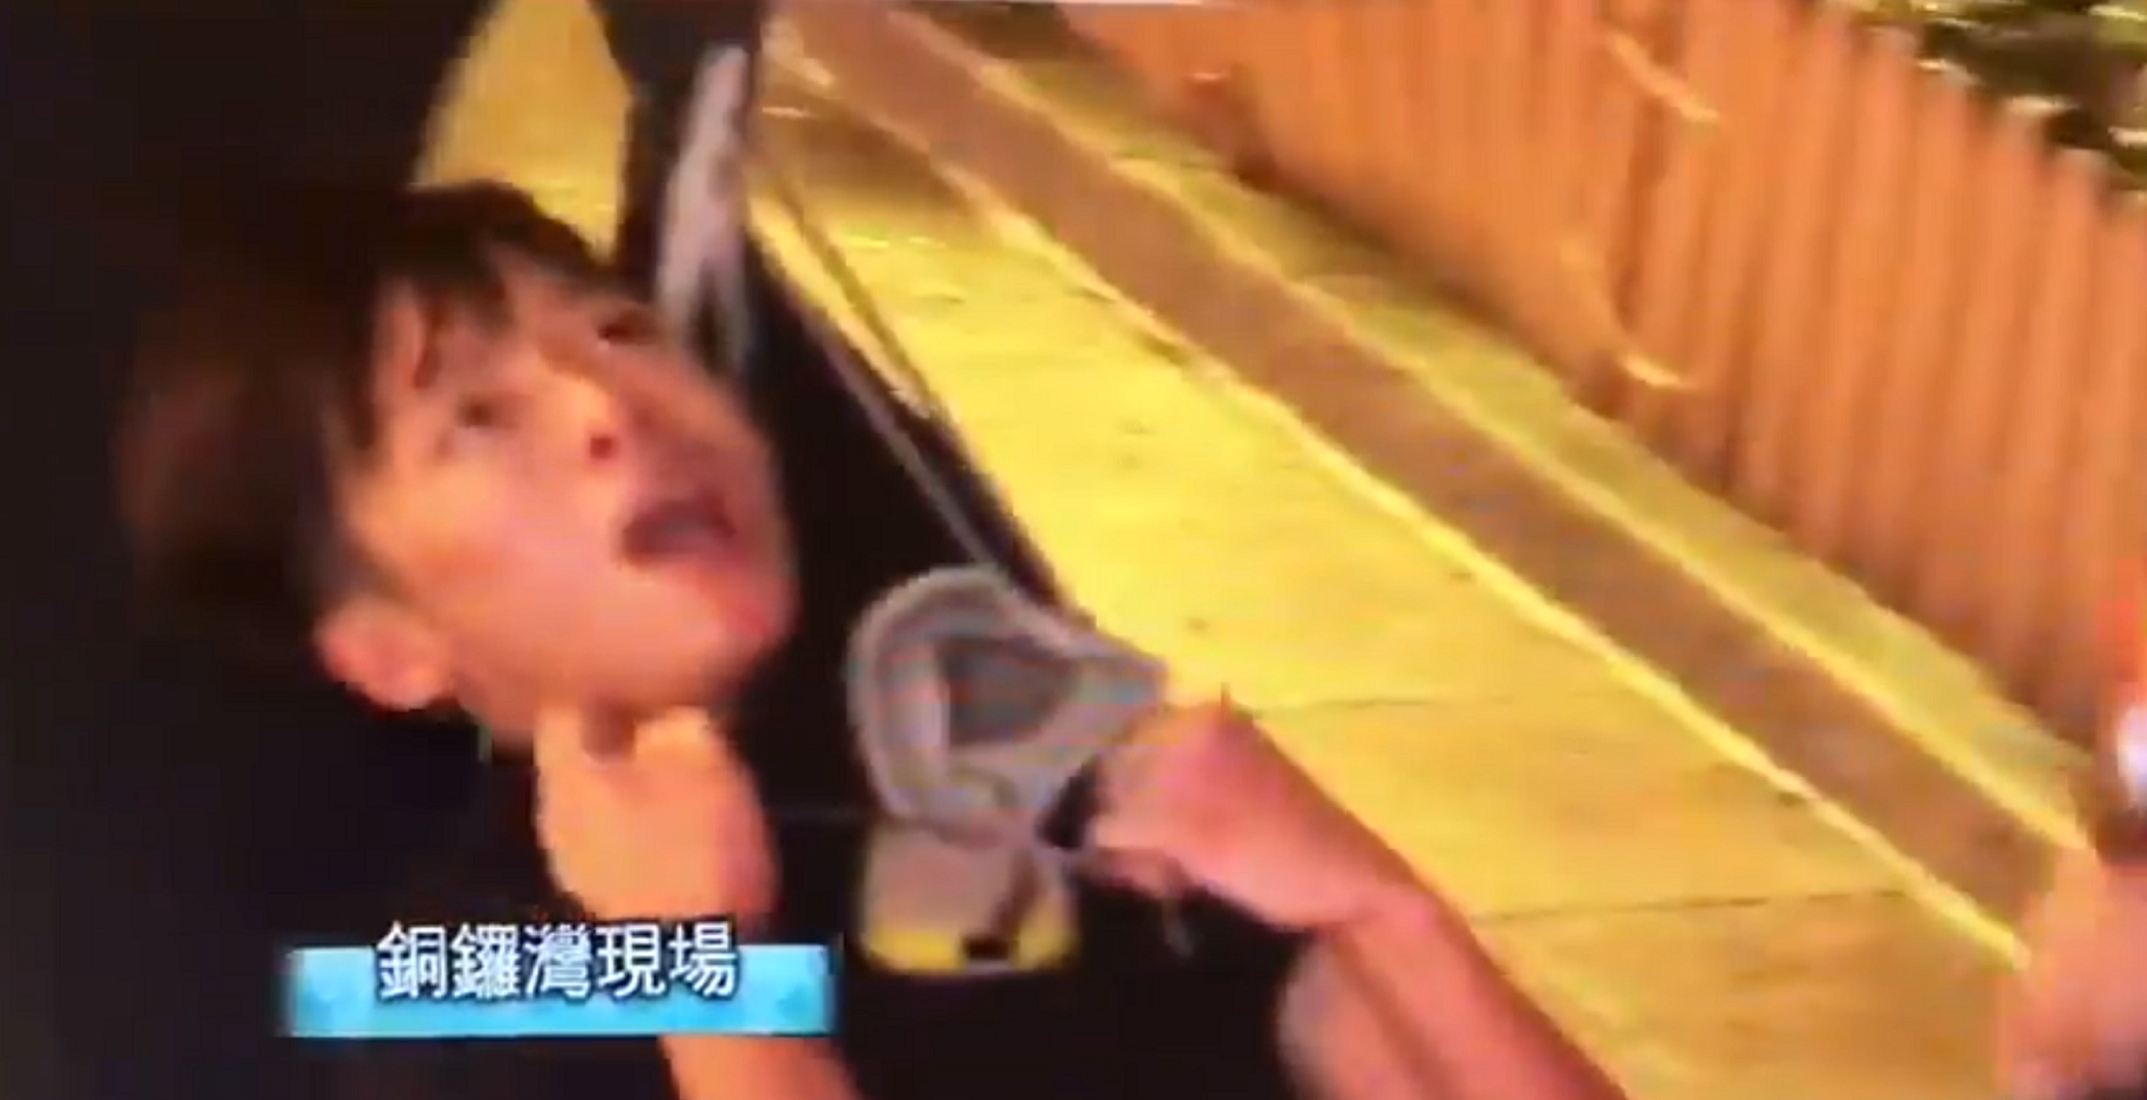 VÍDEO | Càrregues policials dins del metro a Hong Kong